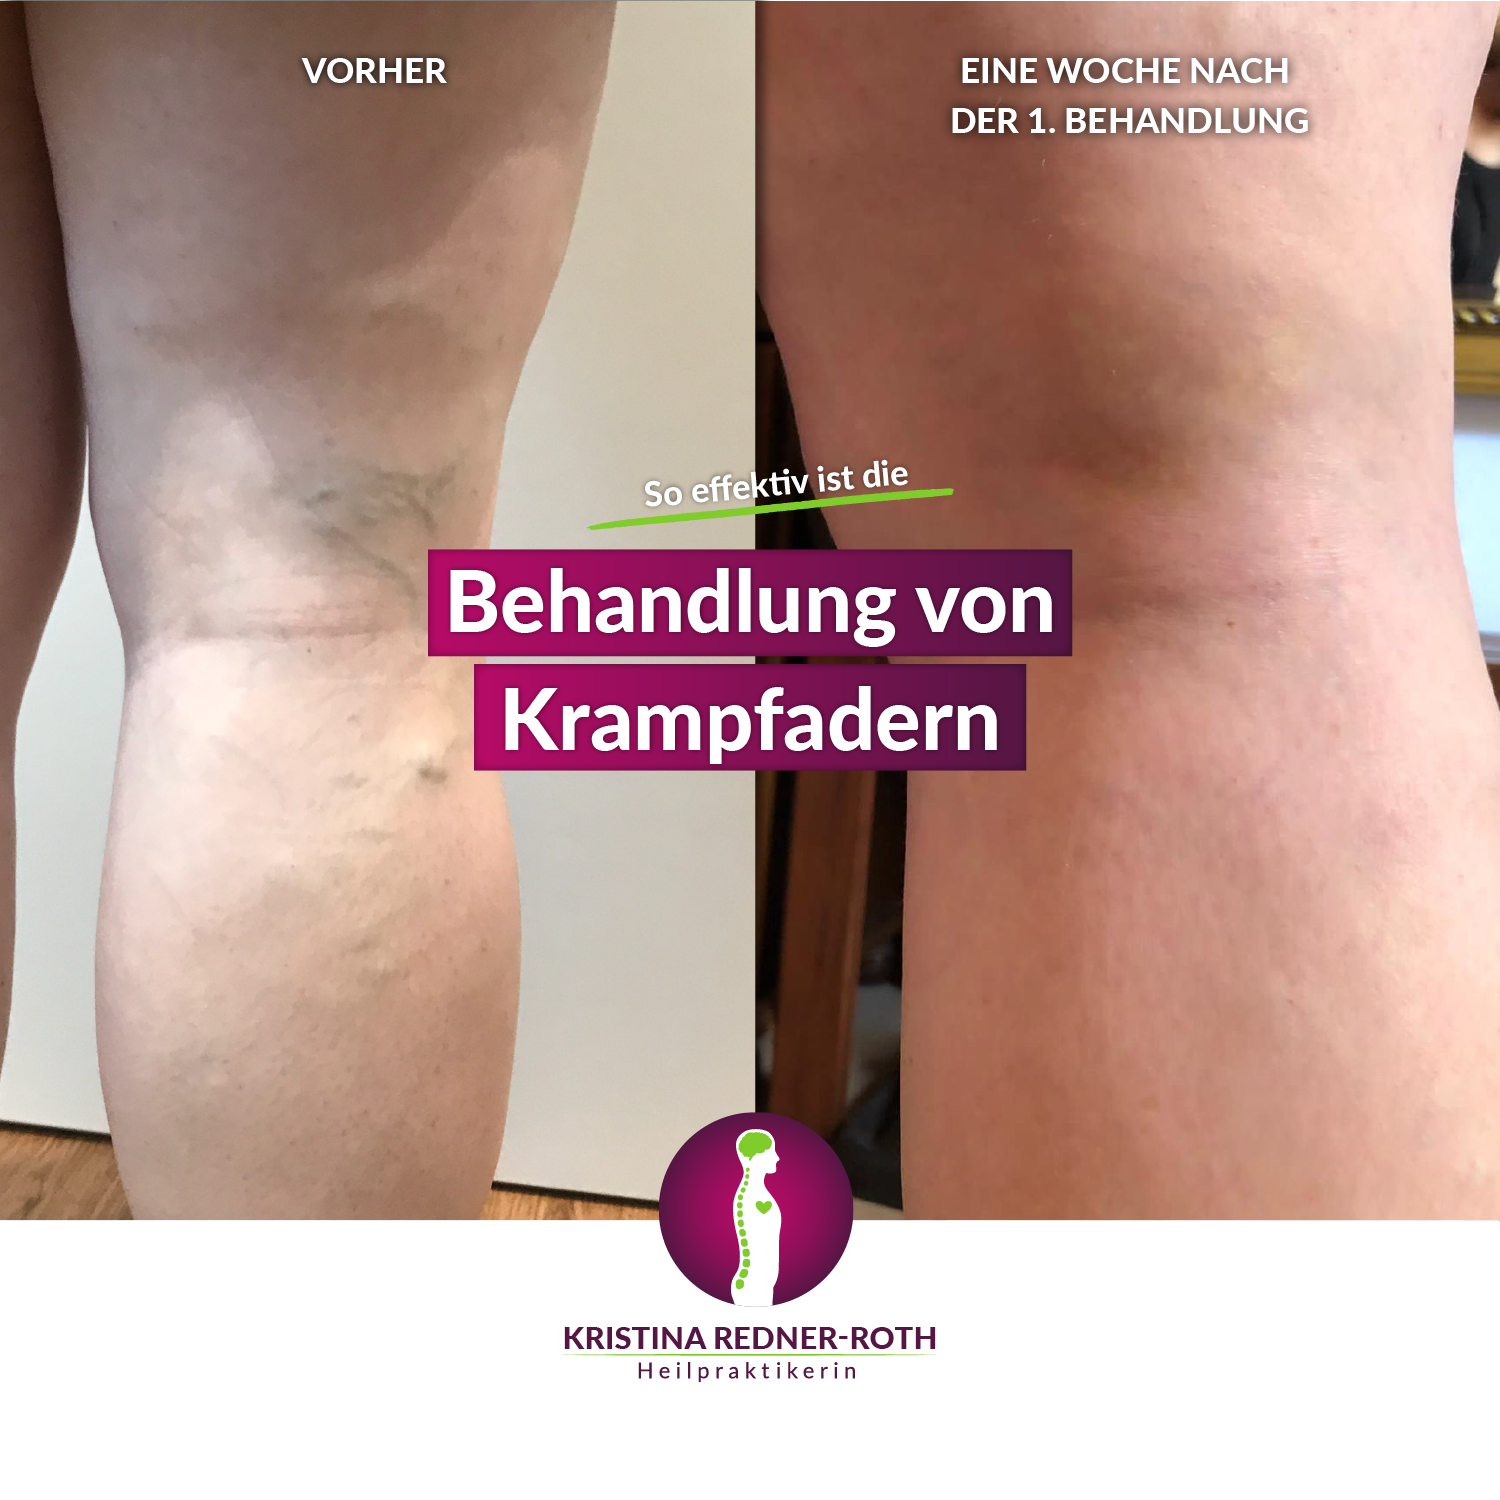 Bild eines Beins vor und nach der Krampfaderbehandlung. Vorher sind Krampfadern deutlich erkennbar, eine Woche nach der 1. Behandlung nicht mehr.